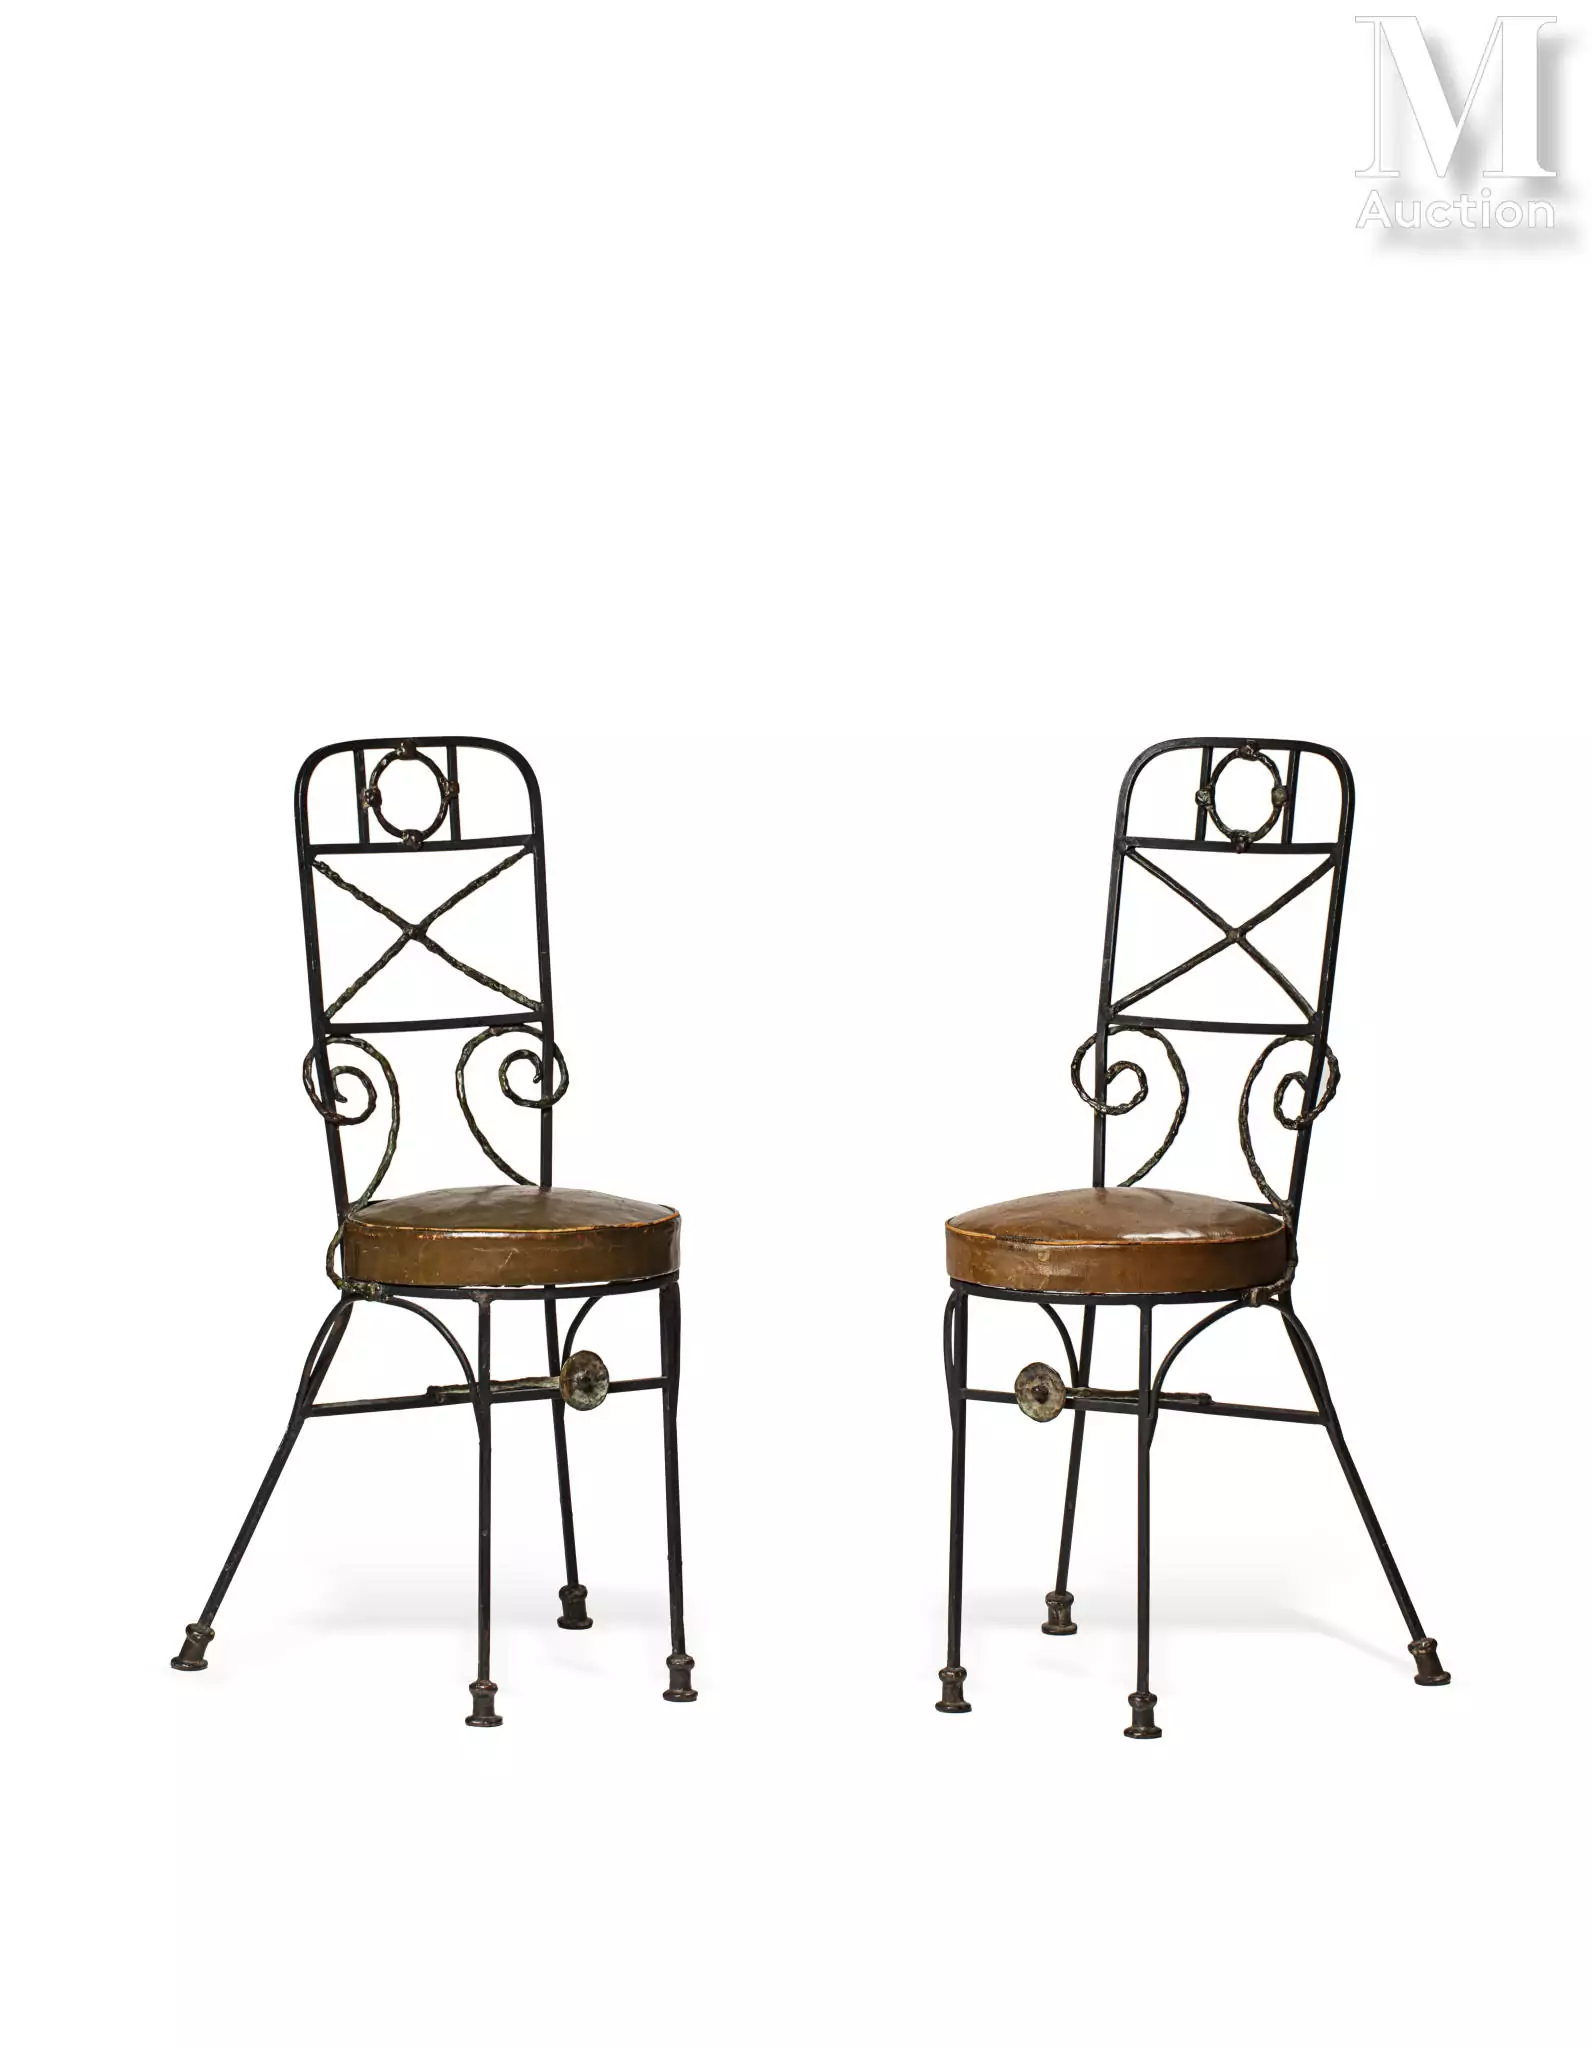 Diego GIACOMETTI (Borgonovo 1902 - Paris 1985) Circa 1962. Paire de chaises modèle "Fondation Maeght" en fer noir et bronze patiné